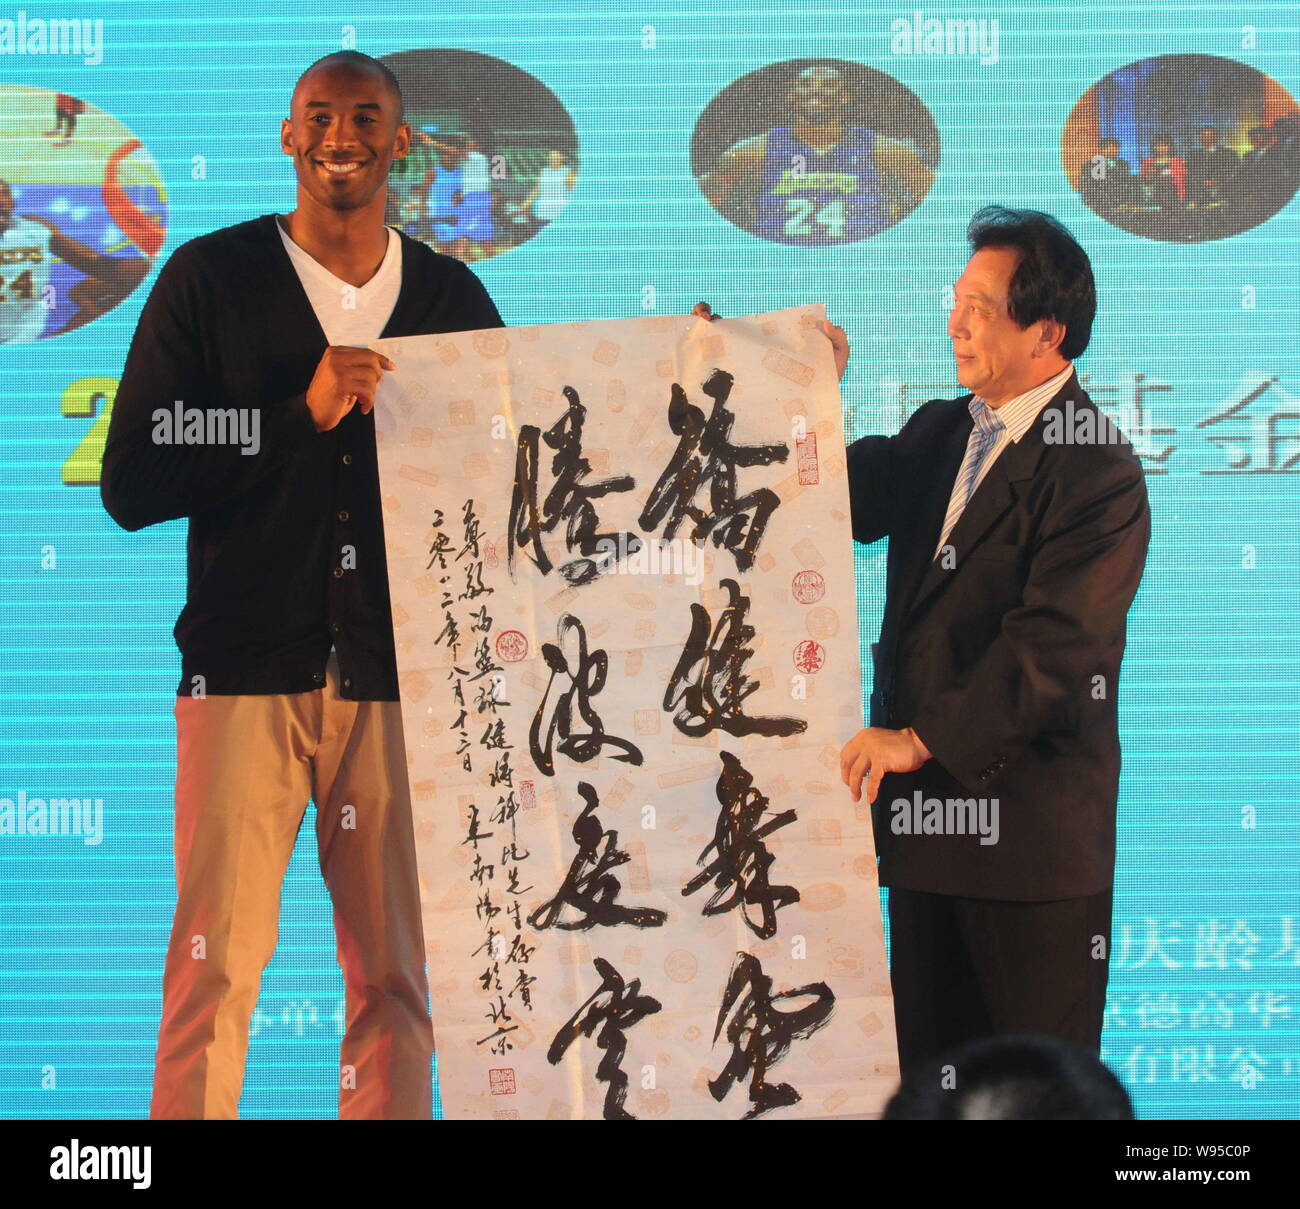 La estrella de la NBA KOBE Byrant, izquierda, recibe un trabajo caligráfico como regalo de un invitado durante un banquete de caridad de la Kobe Bryant en Shanghai, China Fund Foto de stock